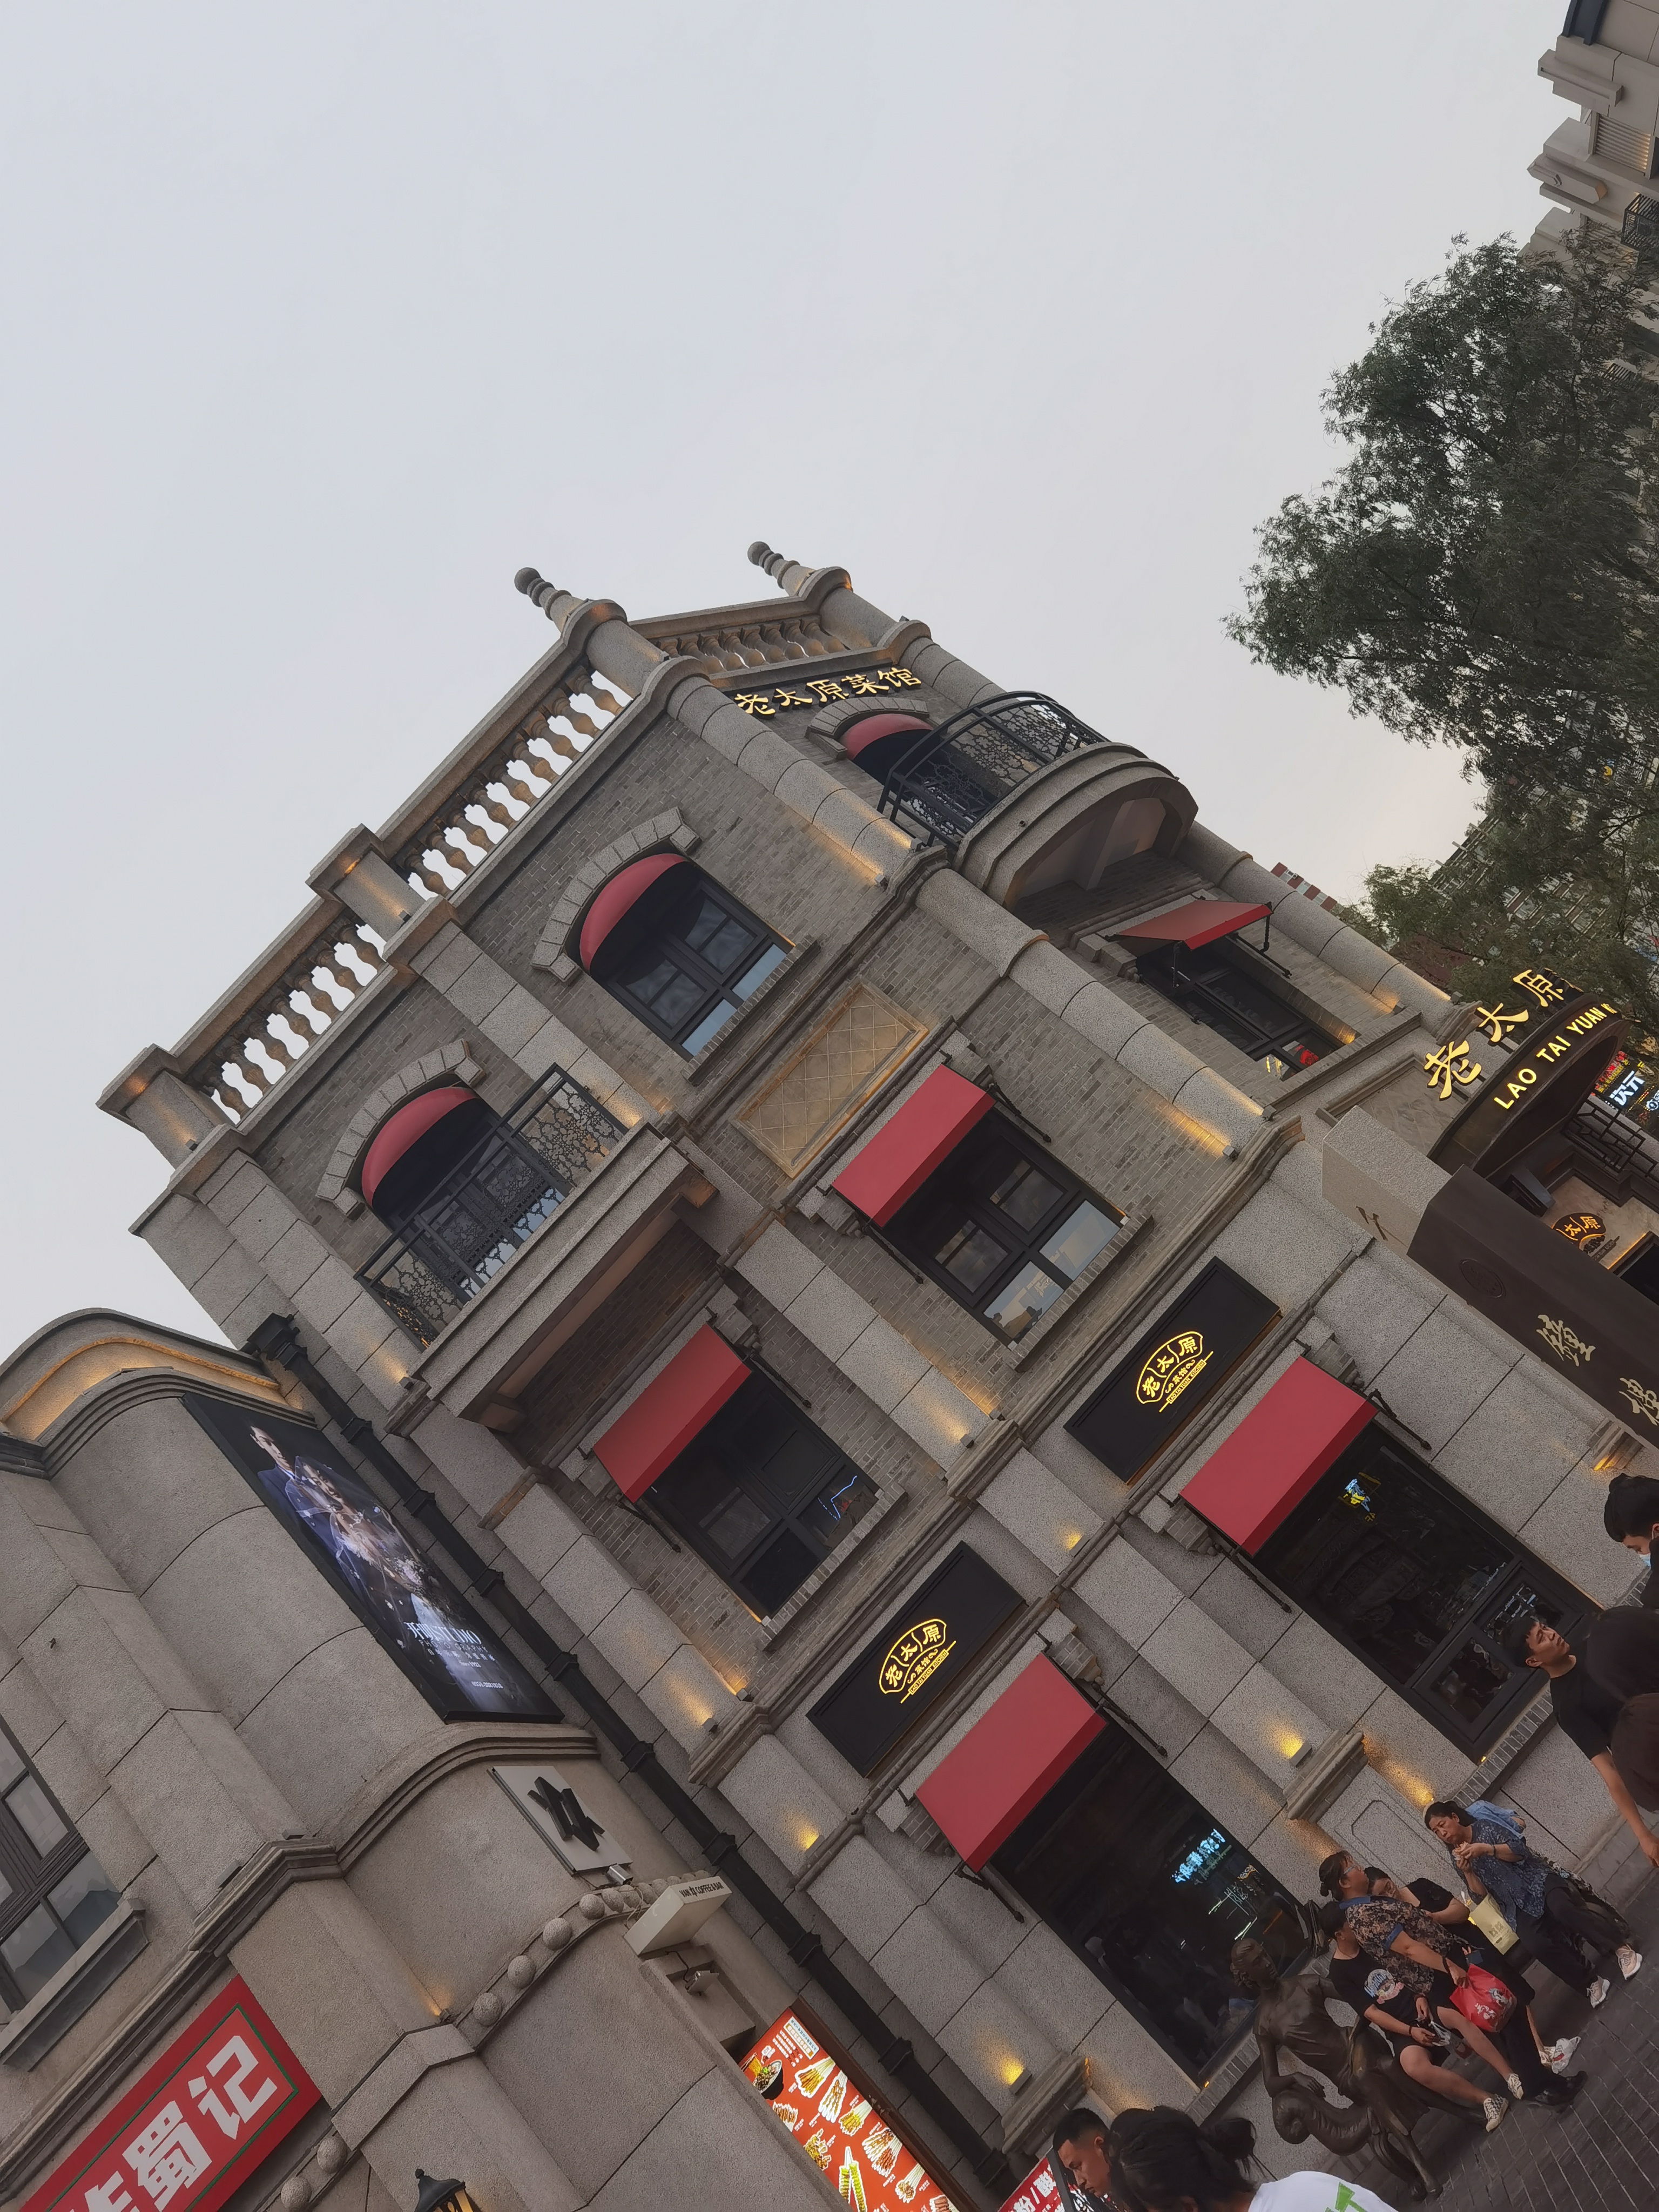 太原钟楼街上海饭店图片